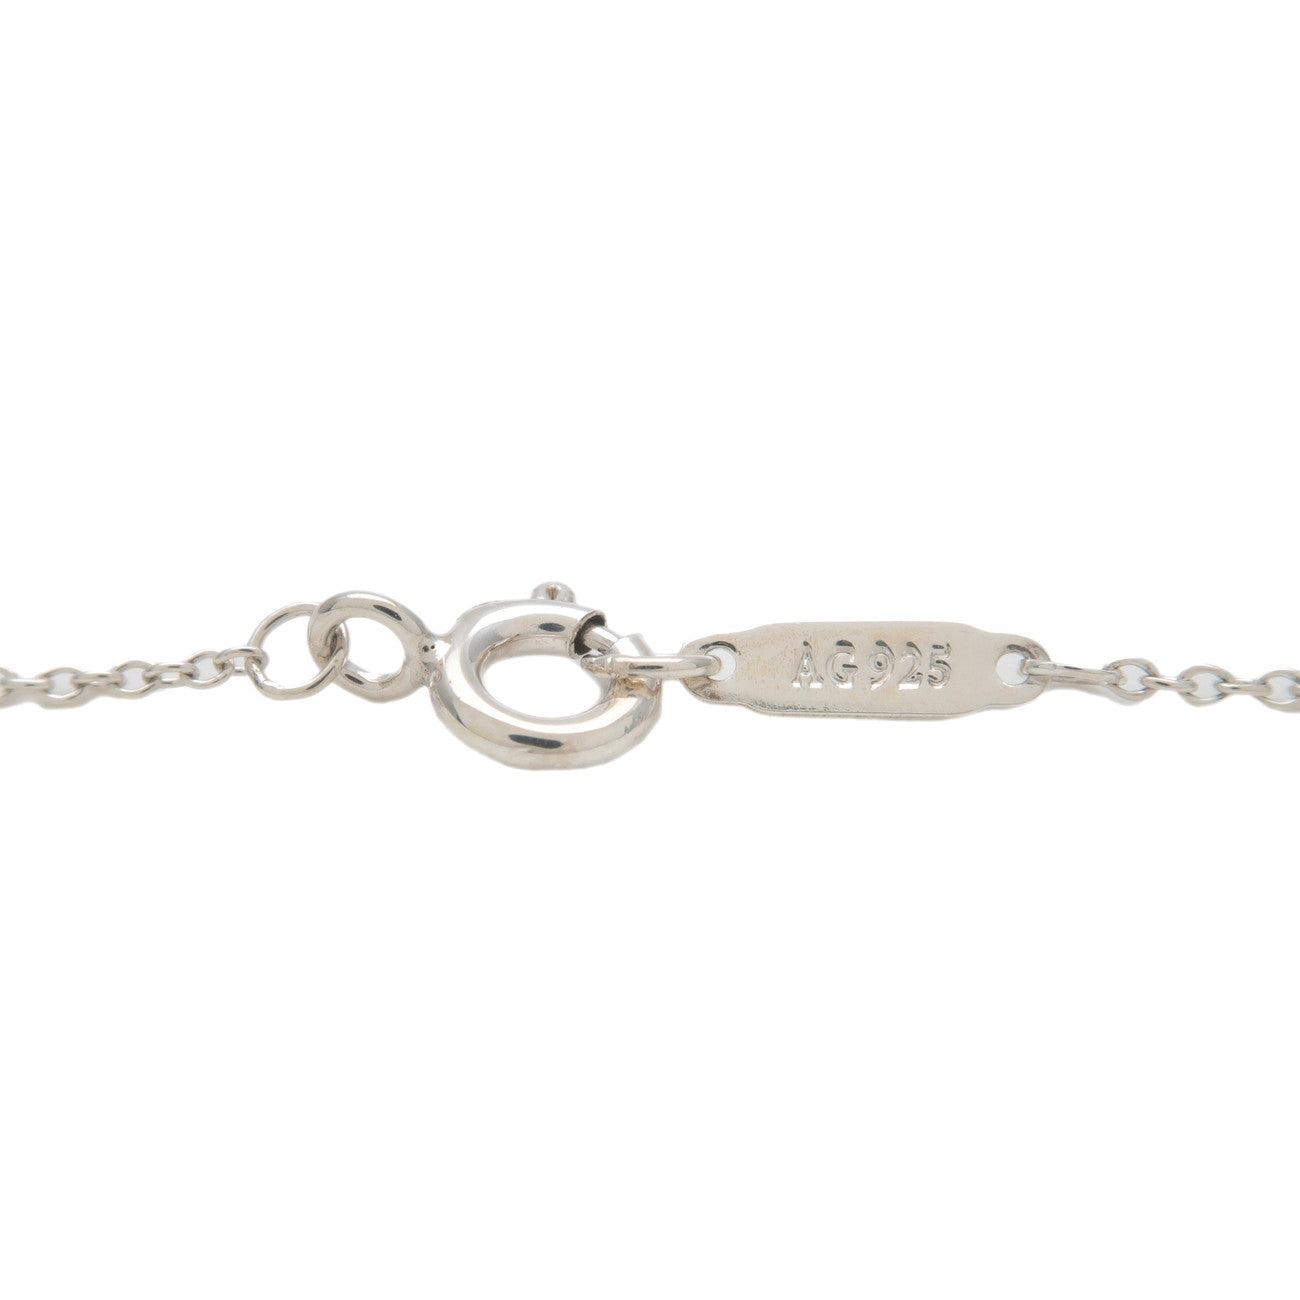 Tiffany&Co. Return to Tiffany Mini Double Heart Tag Necklace SV925